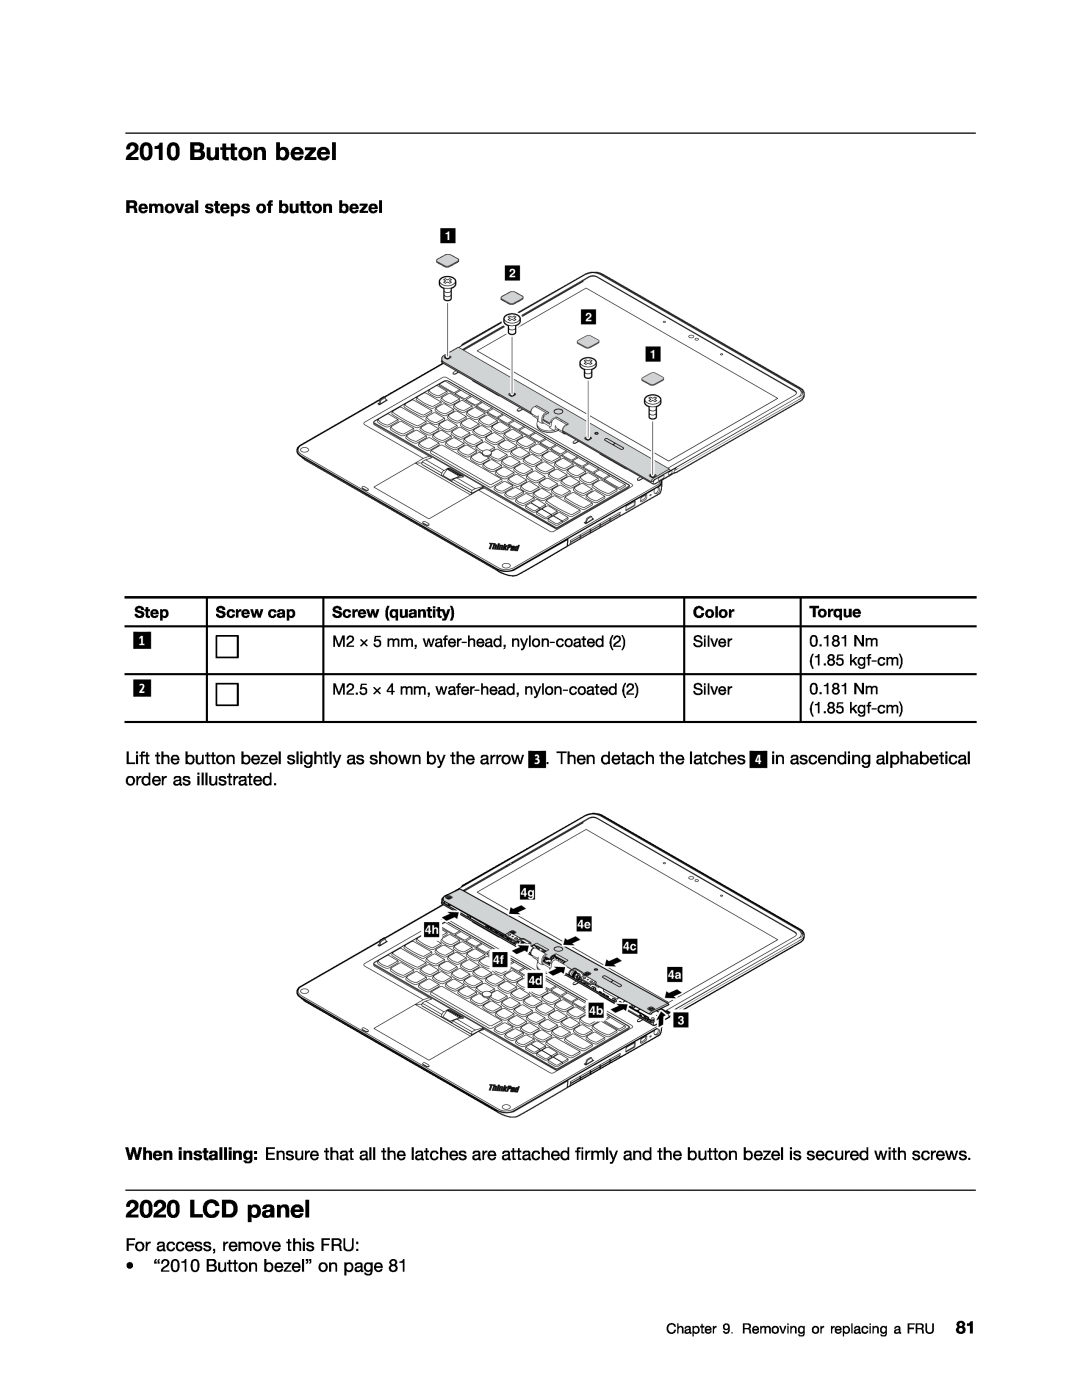 Lenovo 33472YU, S230U manual Button bezel, LCD panel, Removal steps of button bezel 